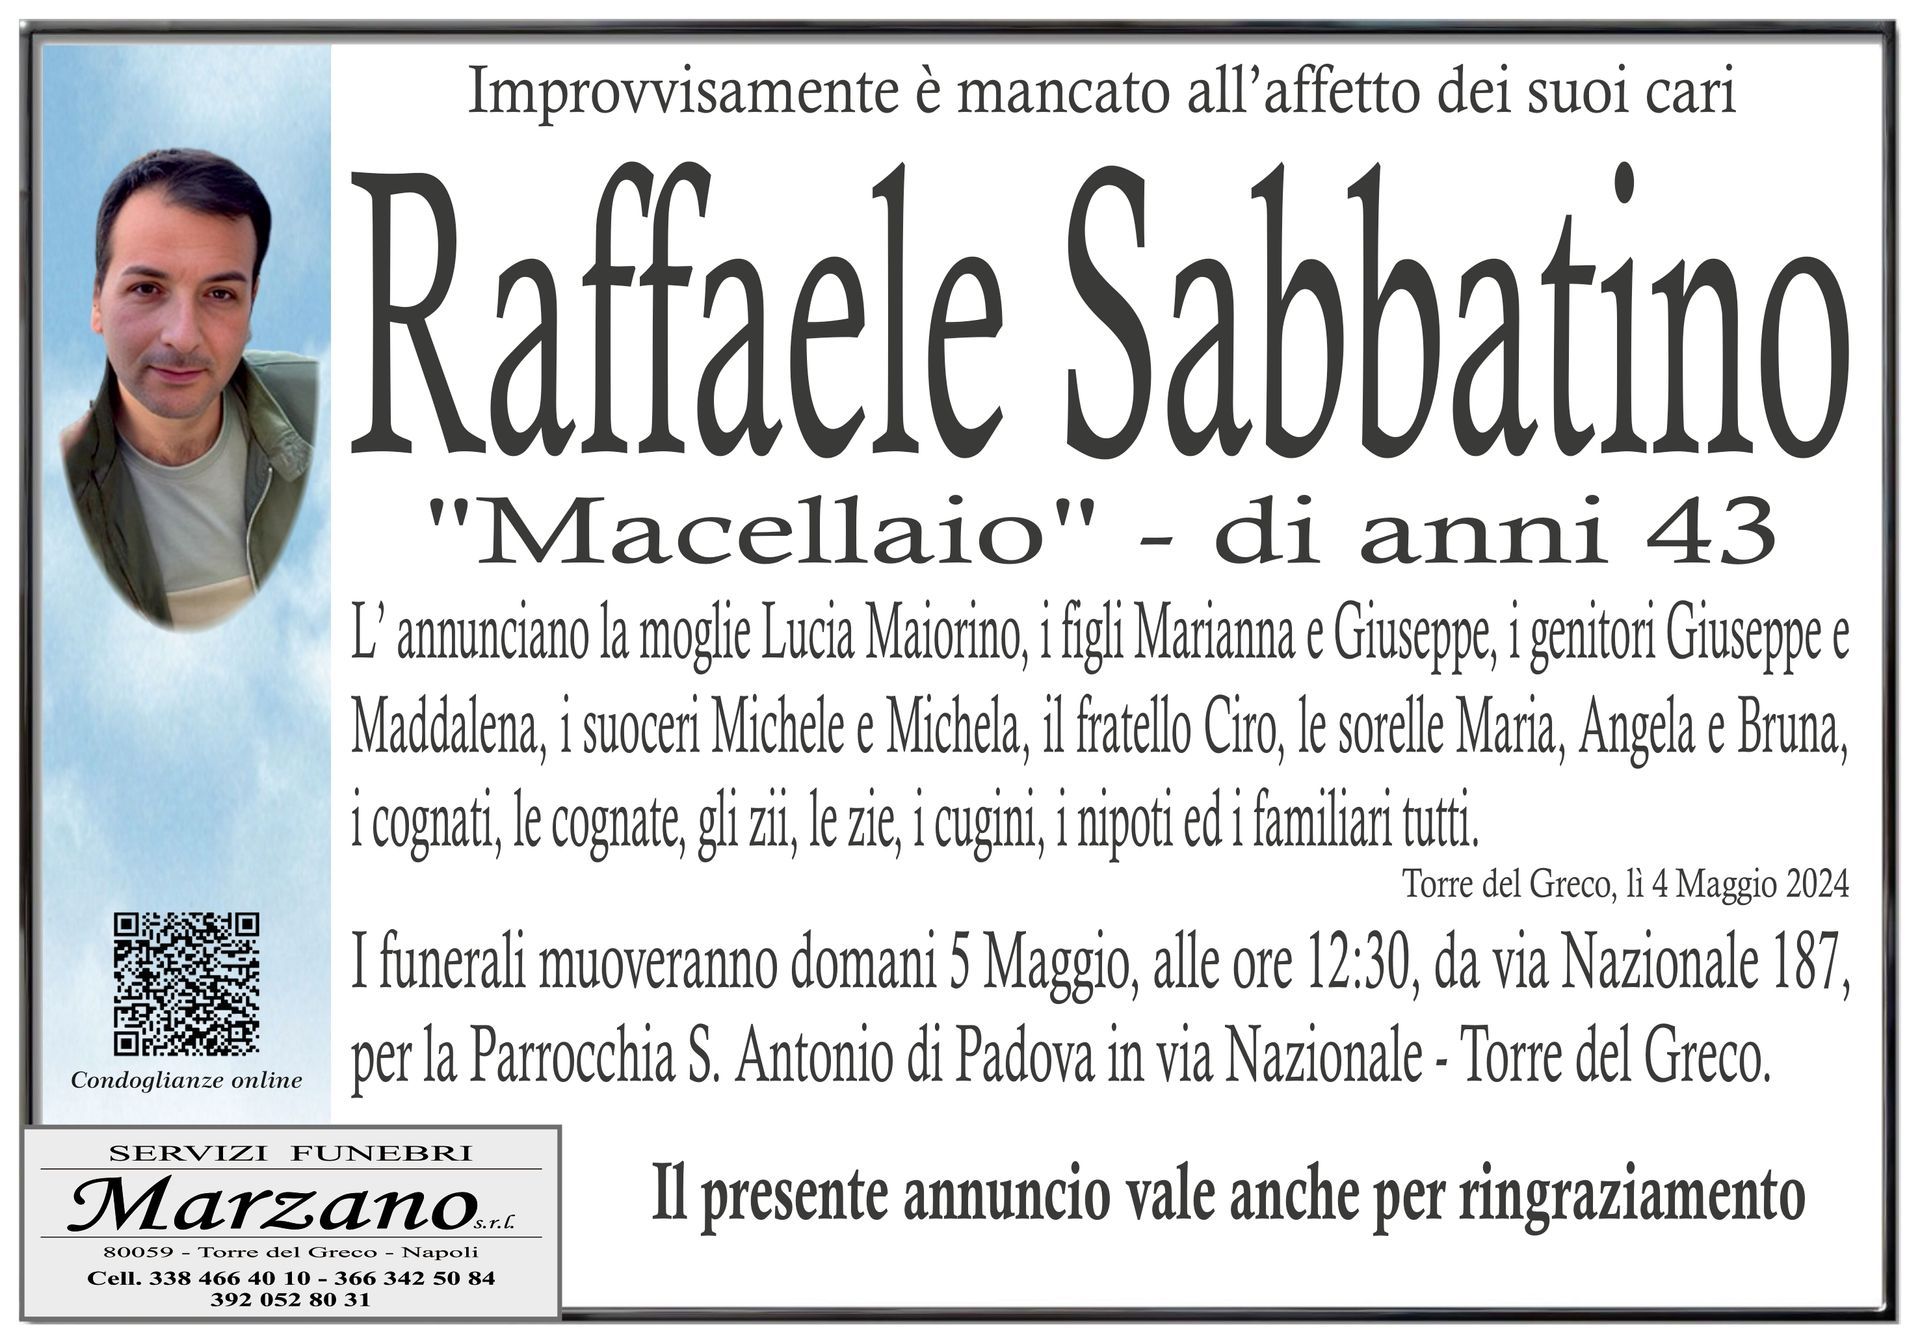 Raffaele Sabbatino